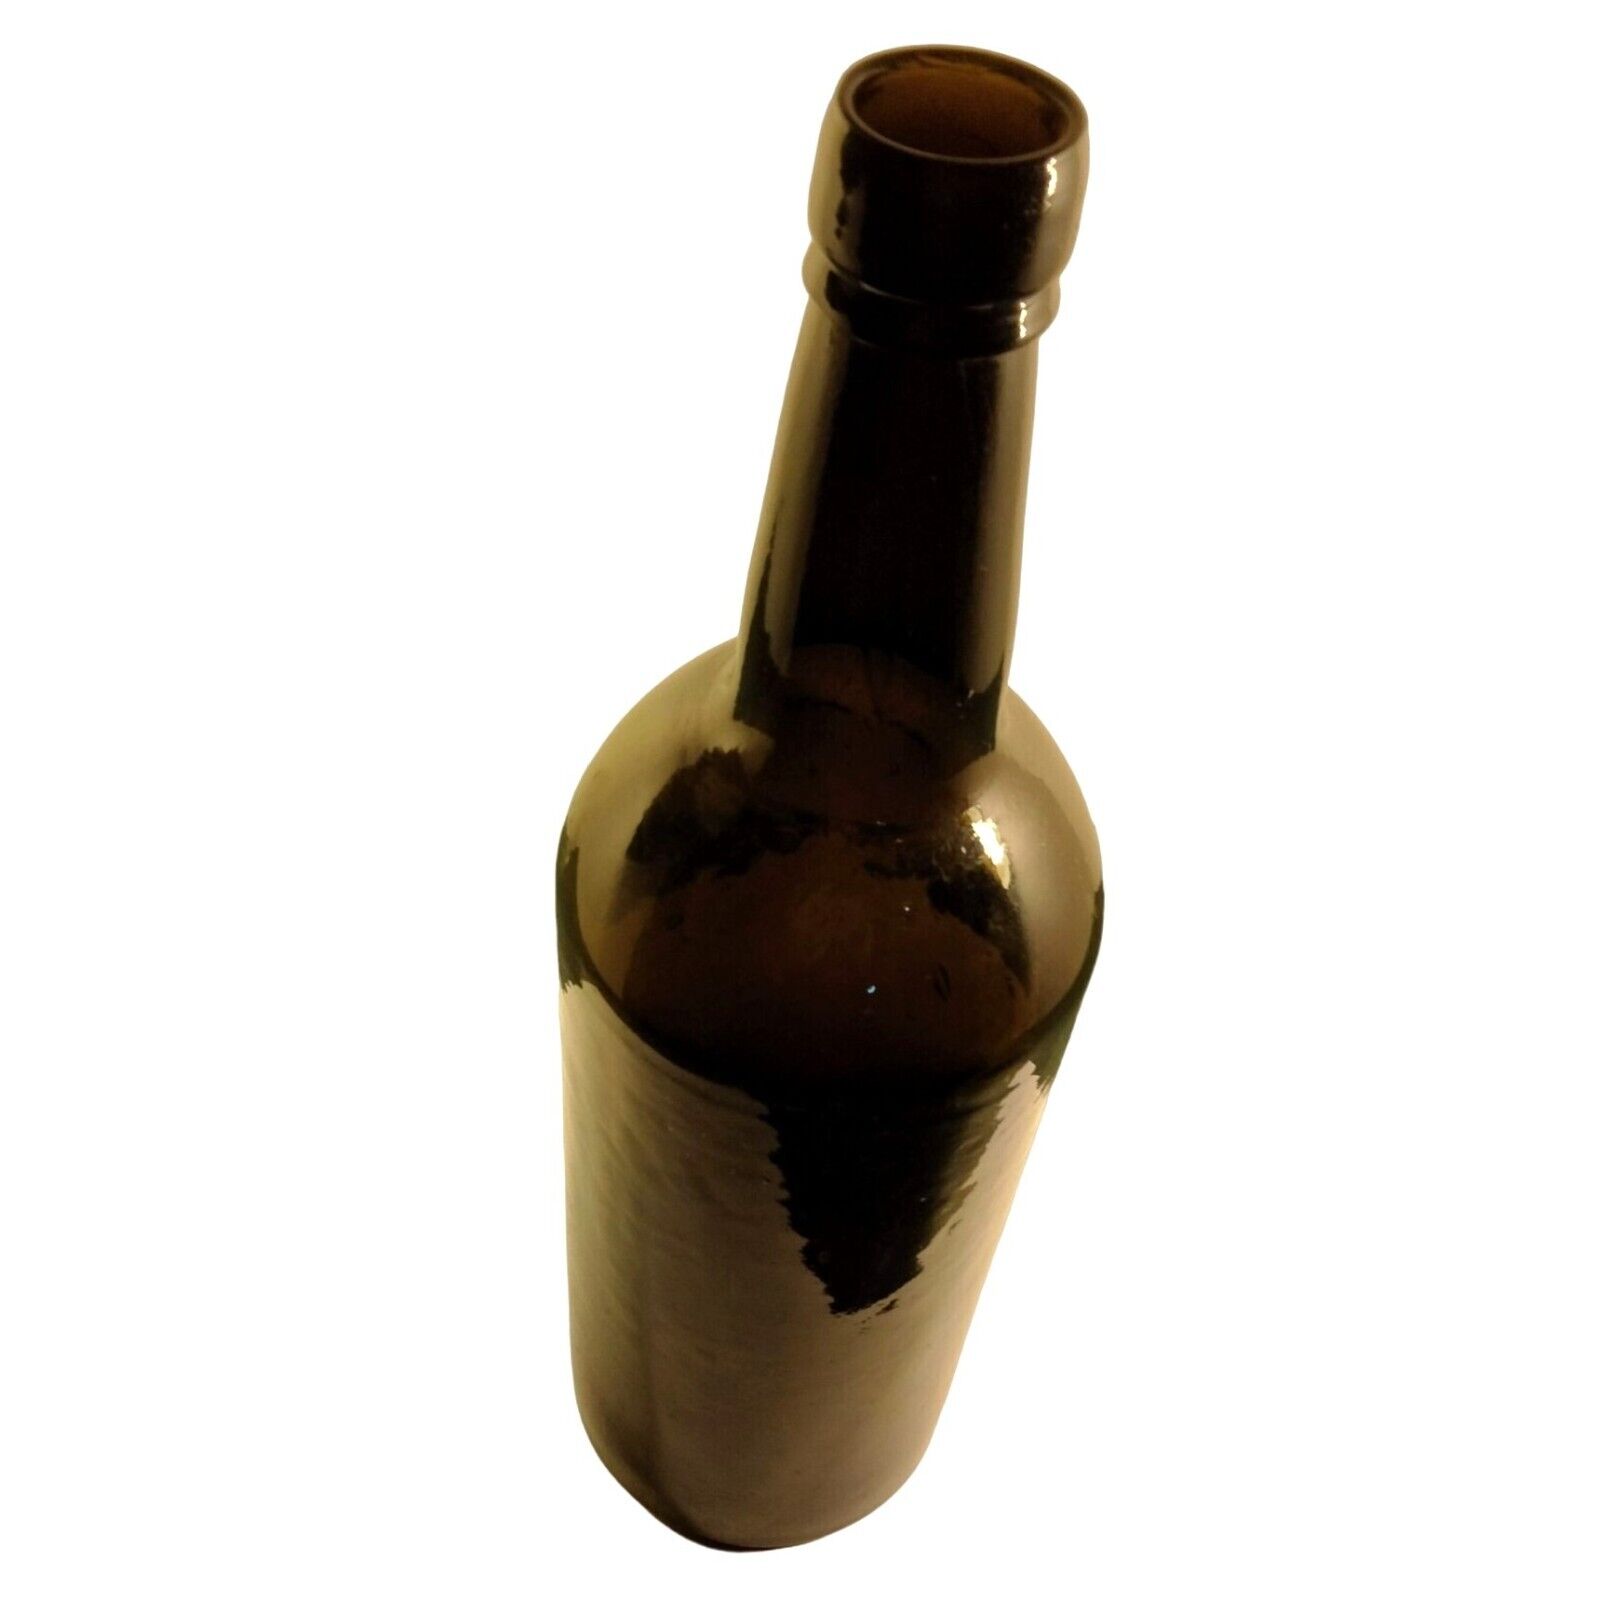 Antique Primitive Brown Glass Spirit Bottle Vintage Liquor Western Colorado